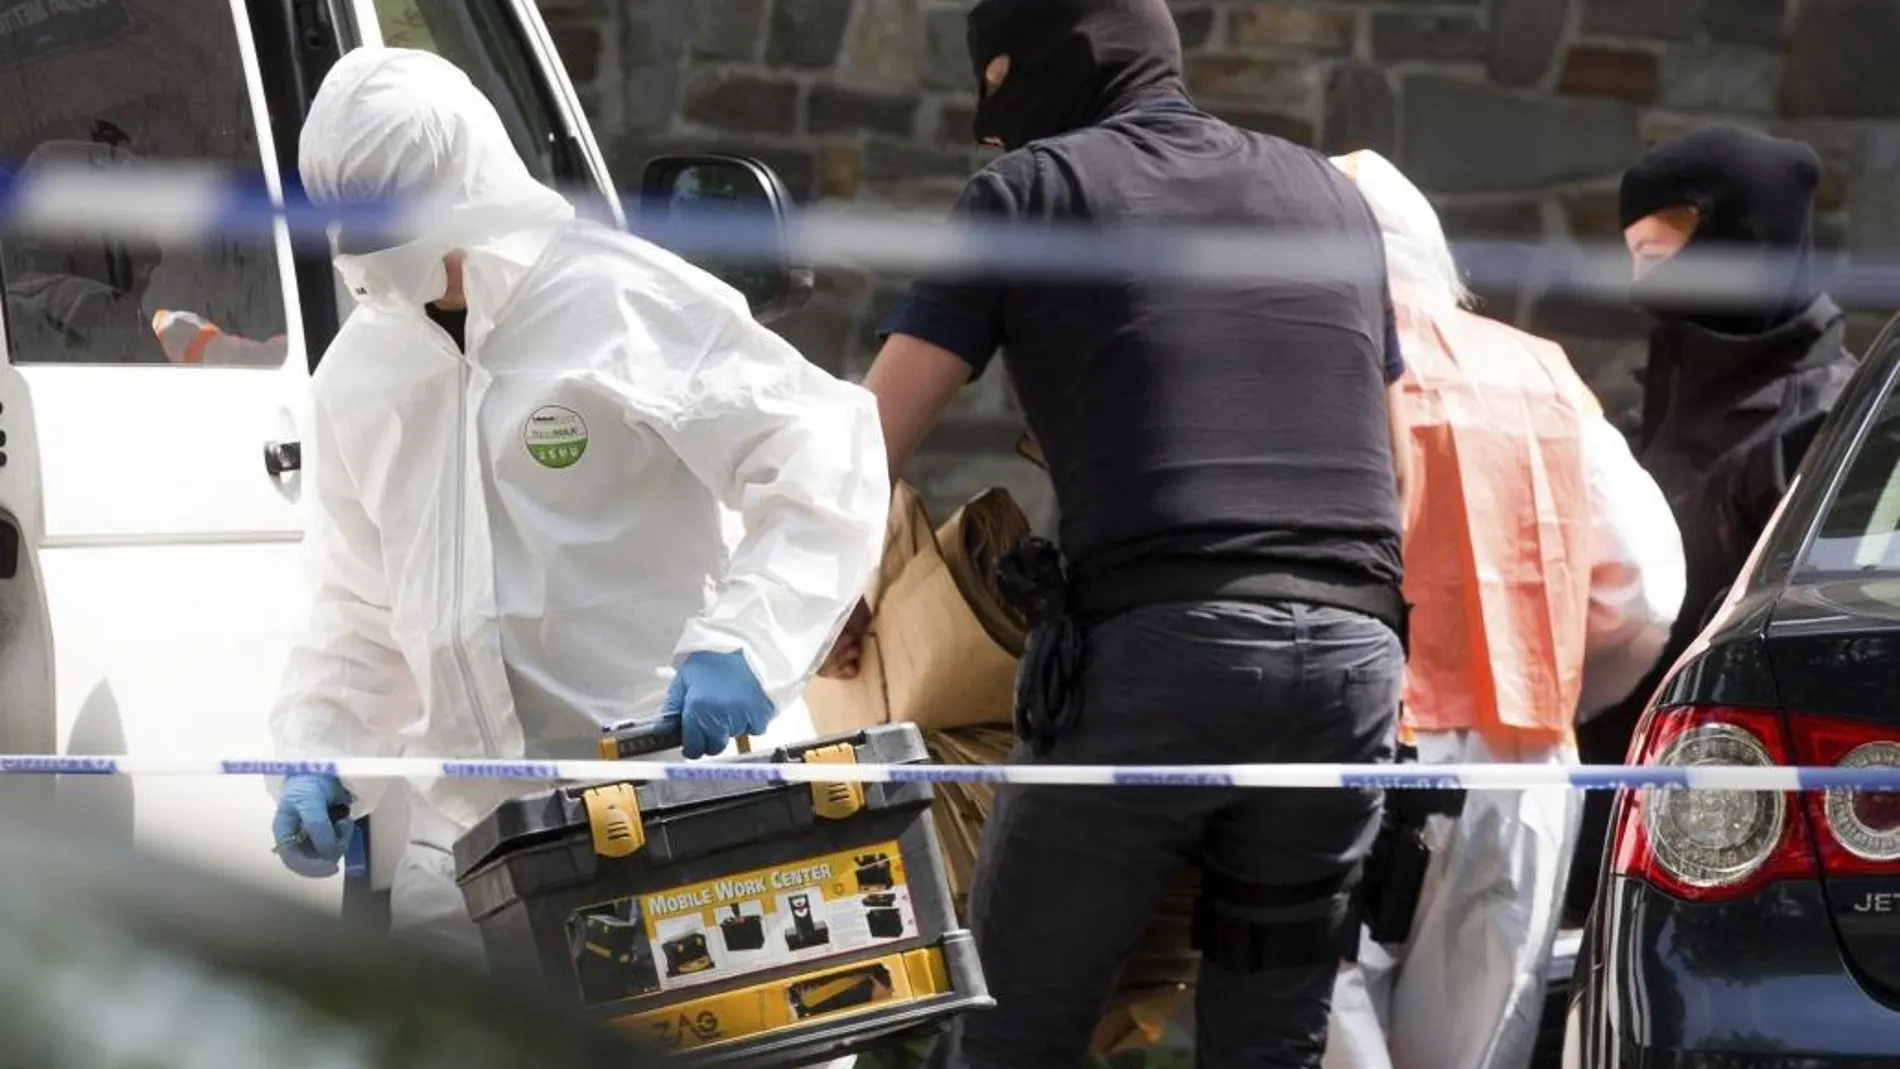 Policías y expertos forenses belgas registran la vivienda del supuesto terrorista, que anoche hizo explotar una carga explosiva en la estación Central de Bruselas